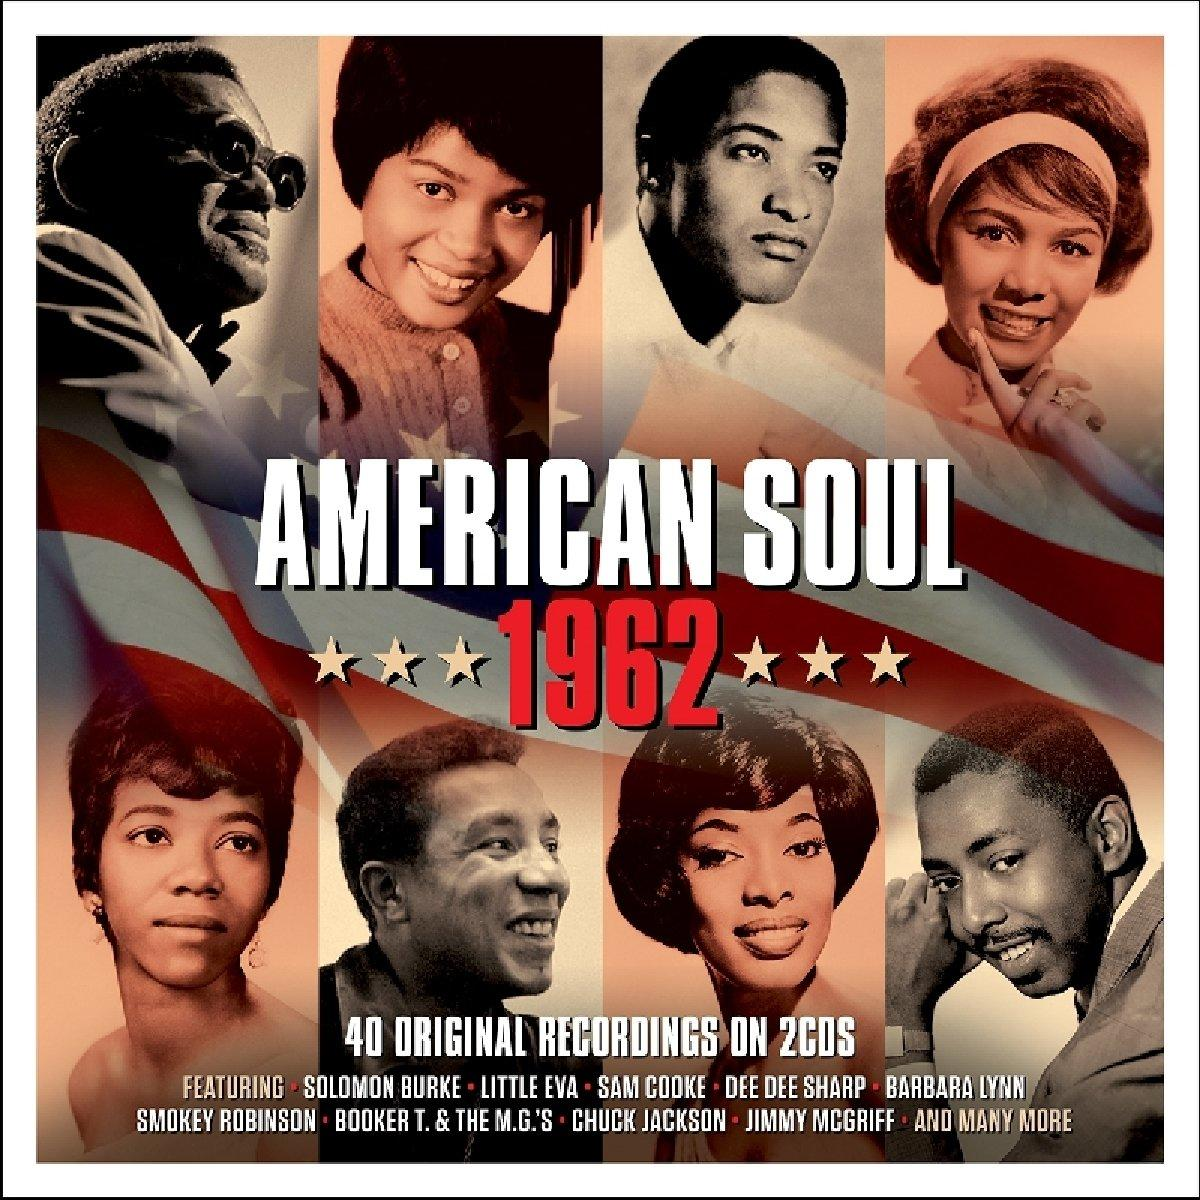 VARIOUS - American - (CD) Soul 1962